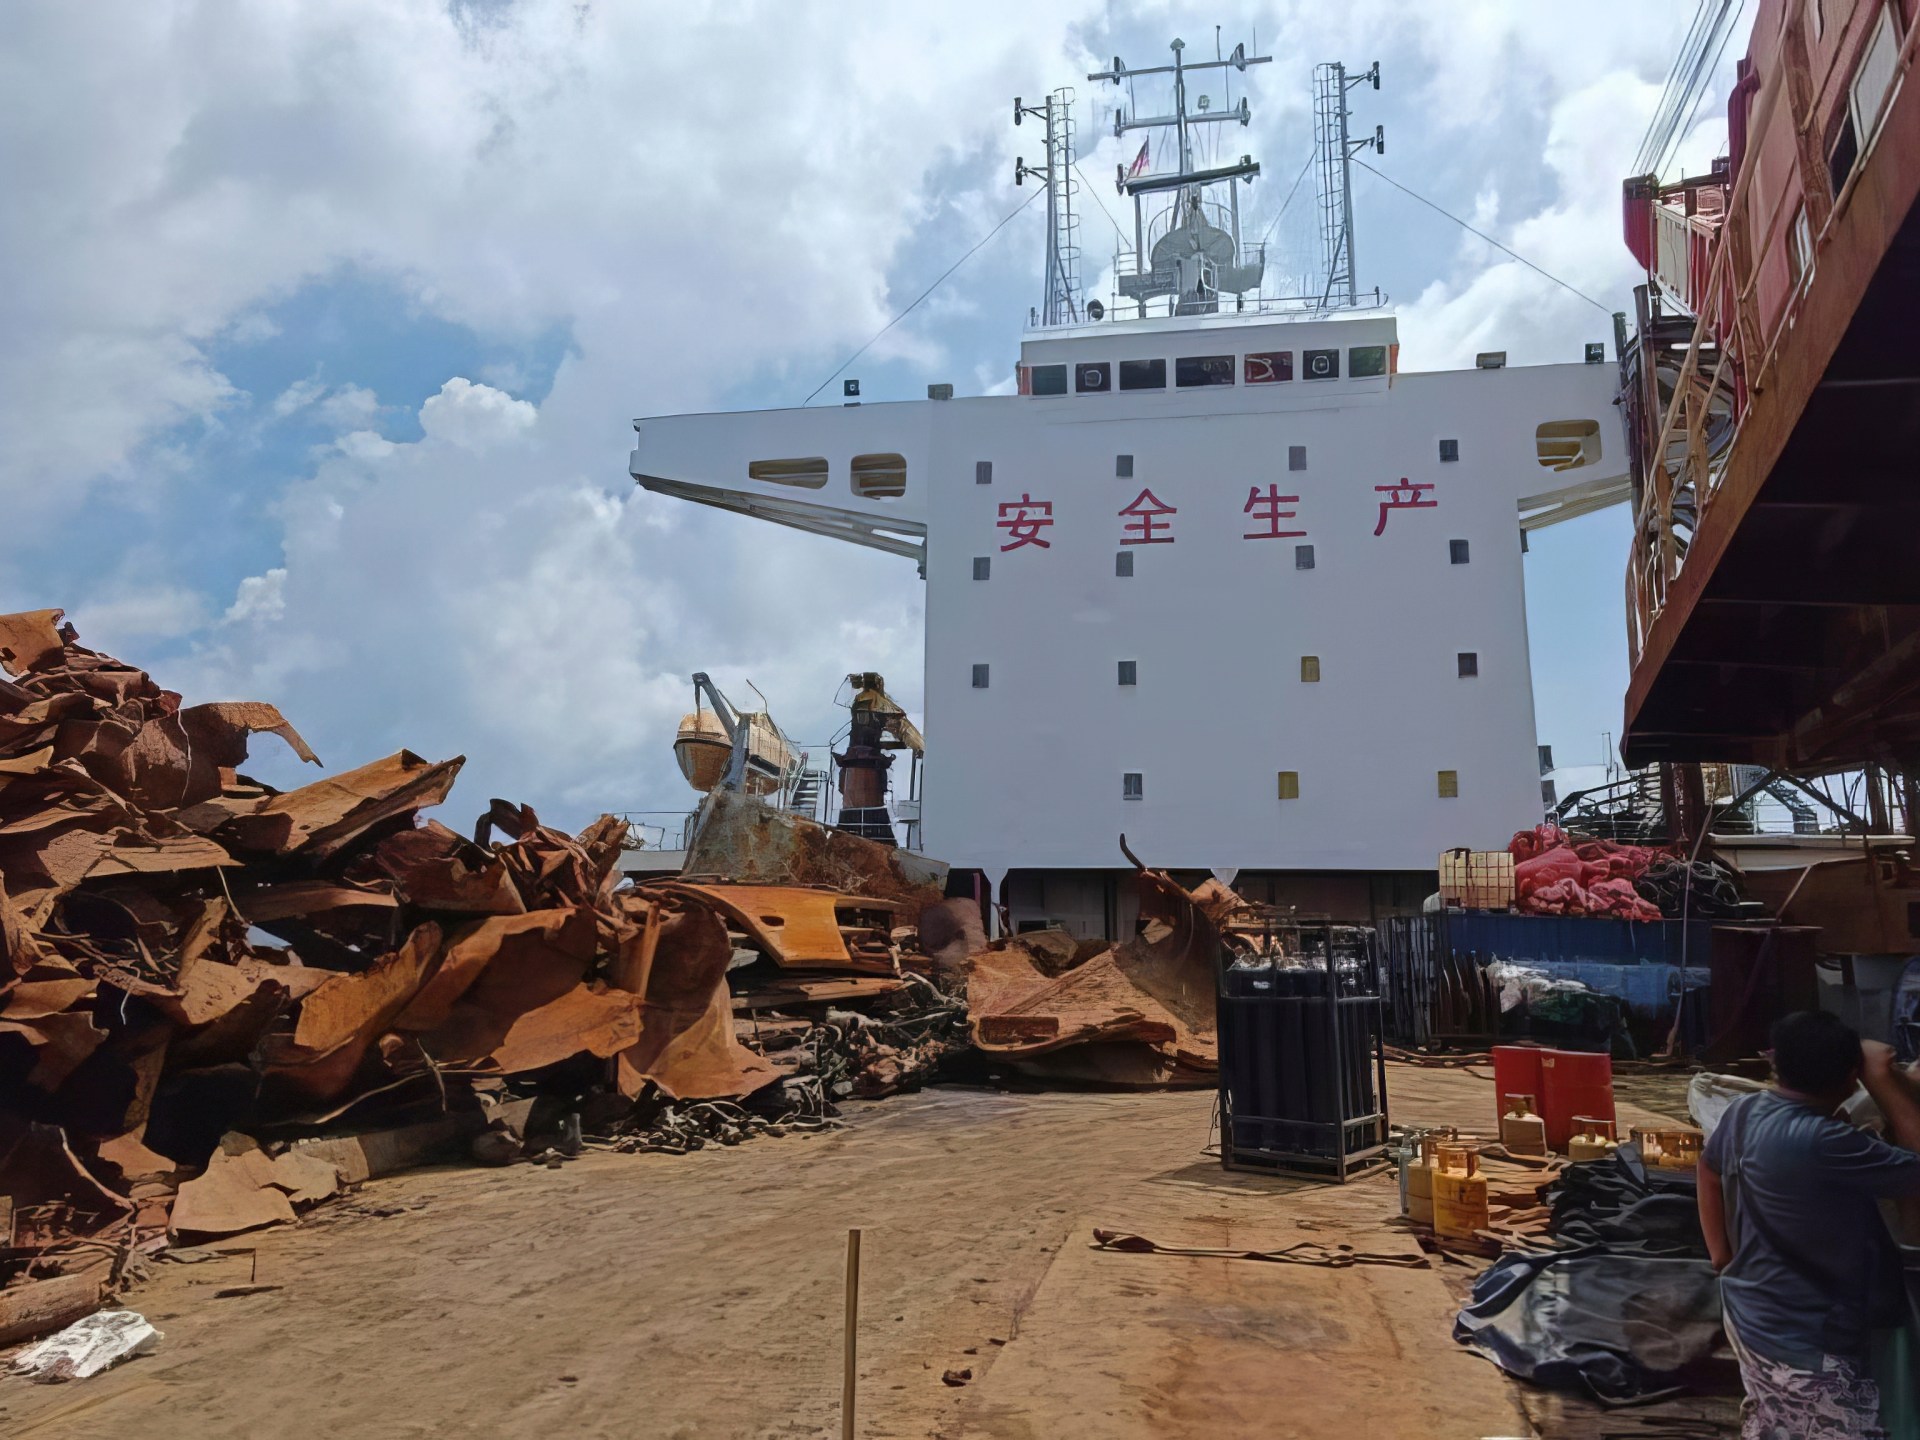 Malezya, İkinci Dünya Savaşı enkazlarını yağmaladığından şüphelenilen Çin gemisine el koydu |  suç haberleri